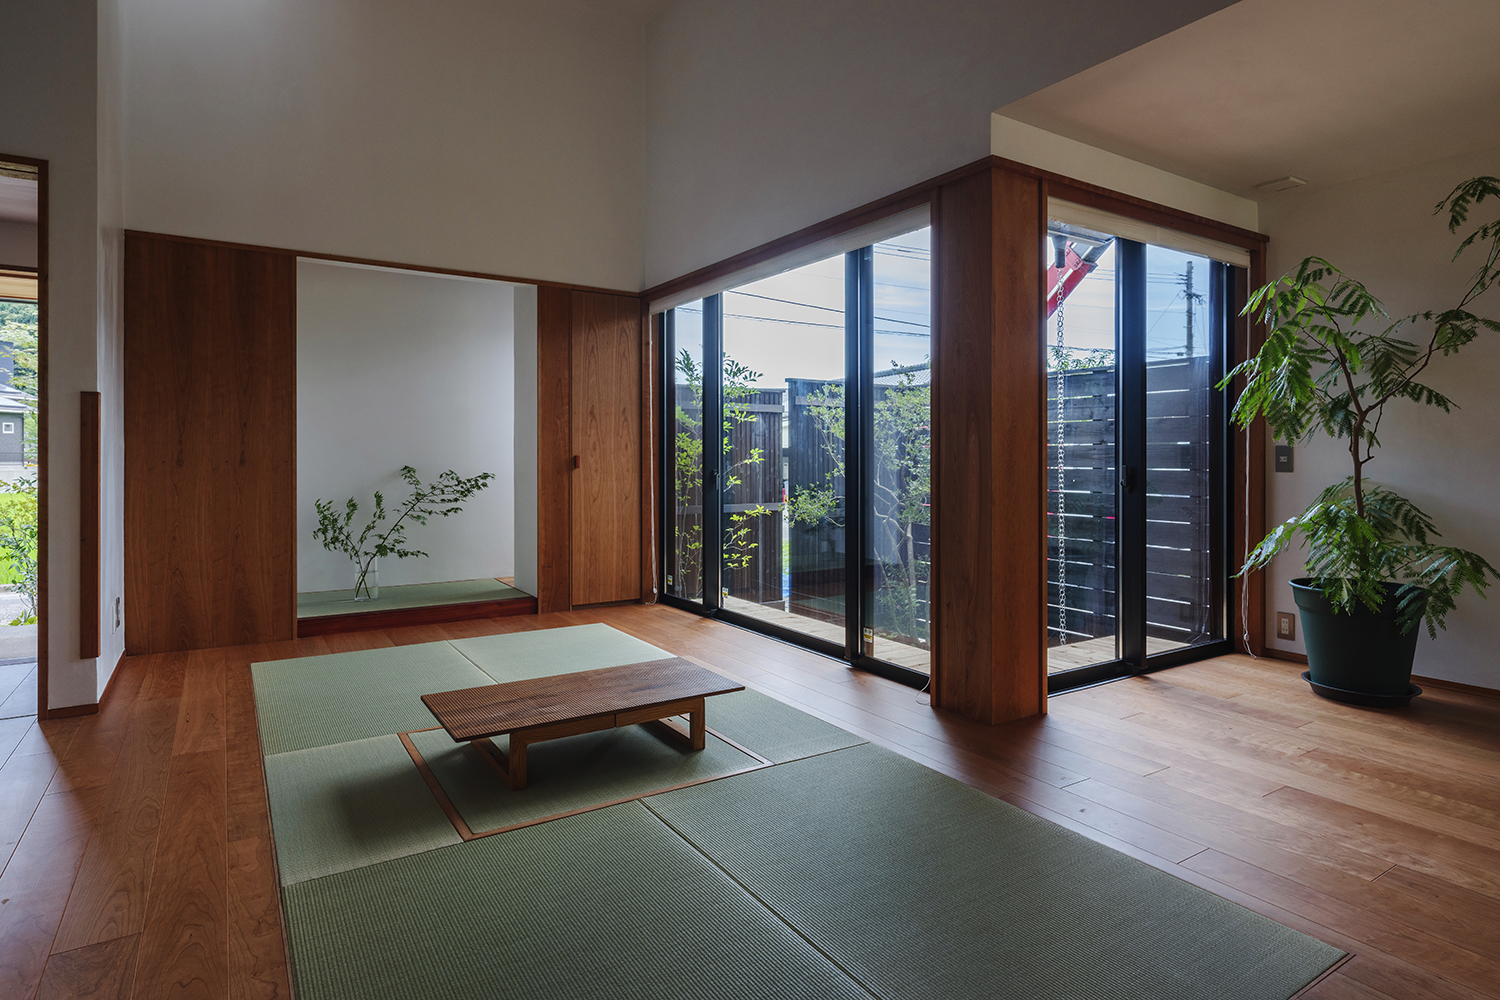 Dưới 3 tầng mái, KTS có chủ ý thay đổi chiều cao trần. Phần trần cao là phòng khách thiết kế mở, những bức tường kính xung quanh kết hợp cây cảnh tạo sự kết nối với khu vườn nhỏ bên ngoài.